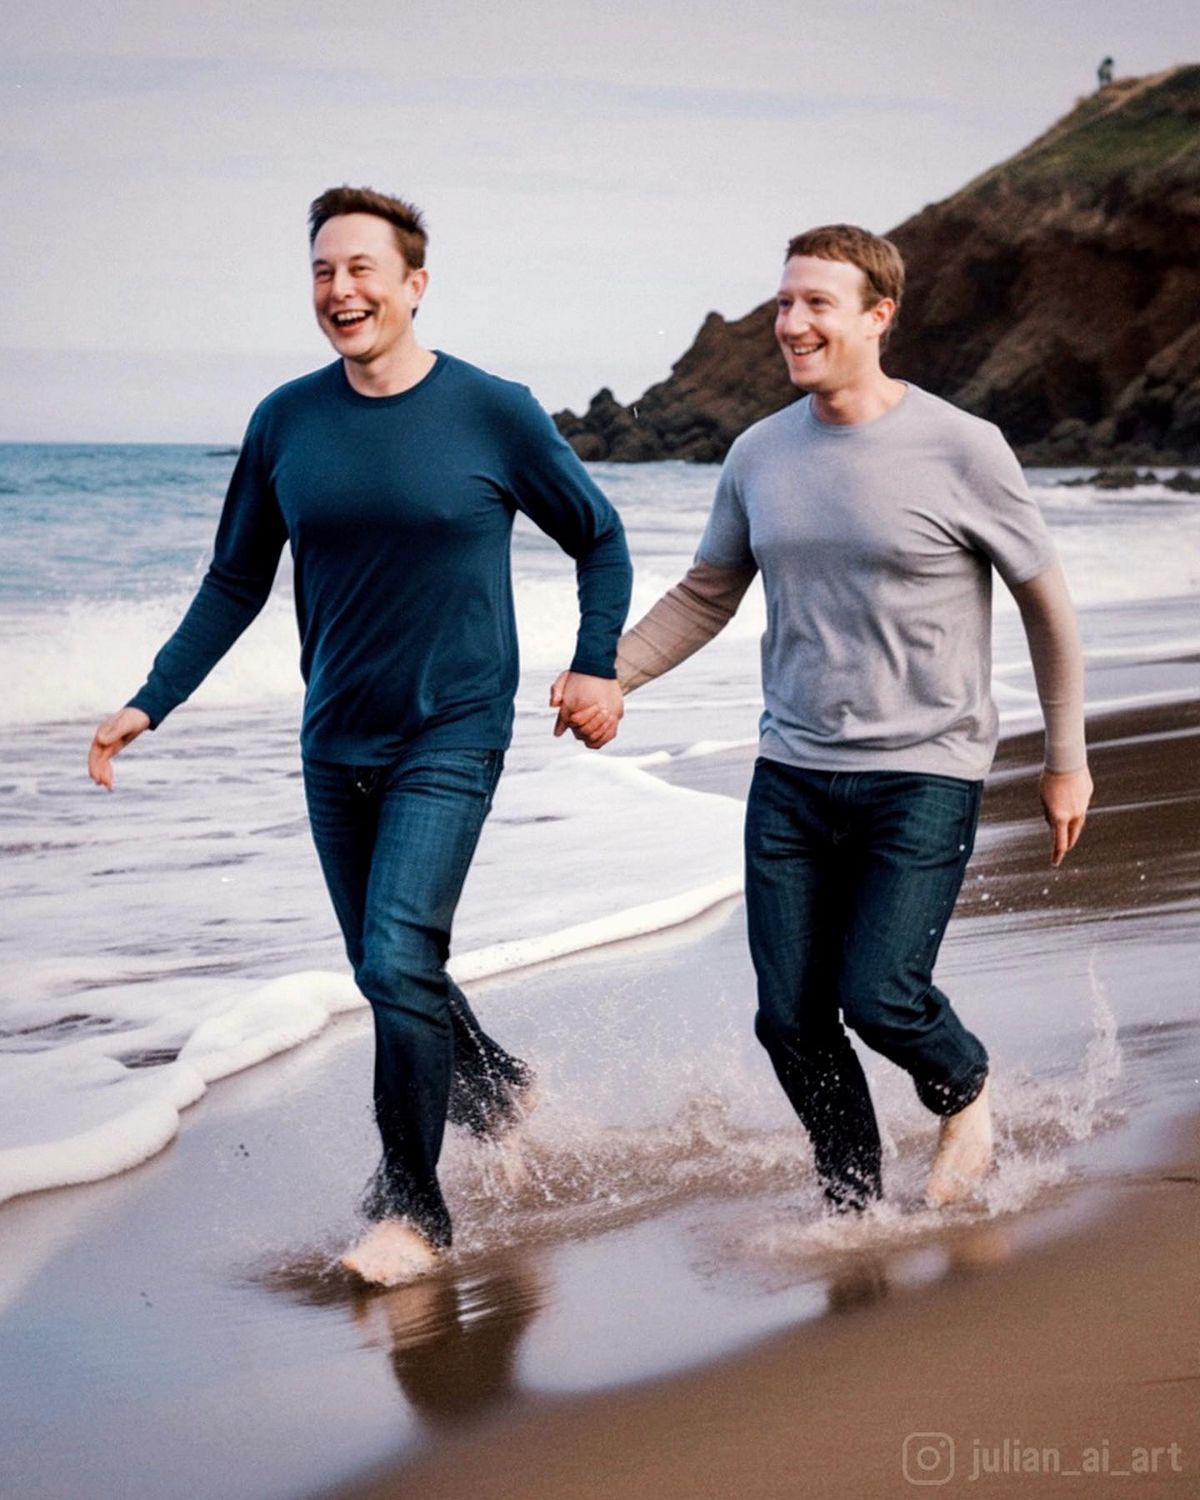 L’une des autres images 
 montre Elon Musk et Mark Zuckerberg se tenant la main tout en gambadant sur le rivage.